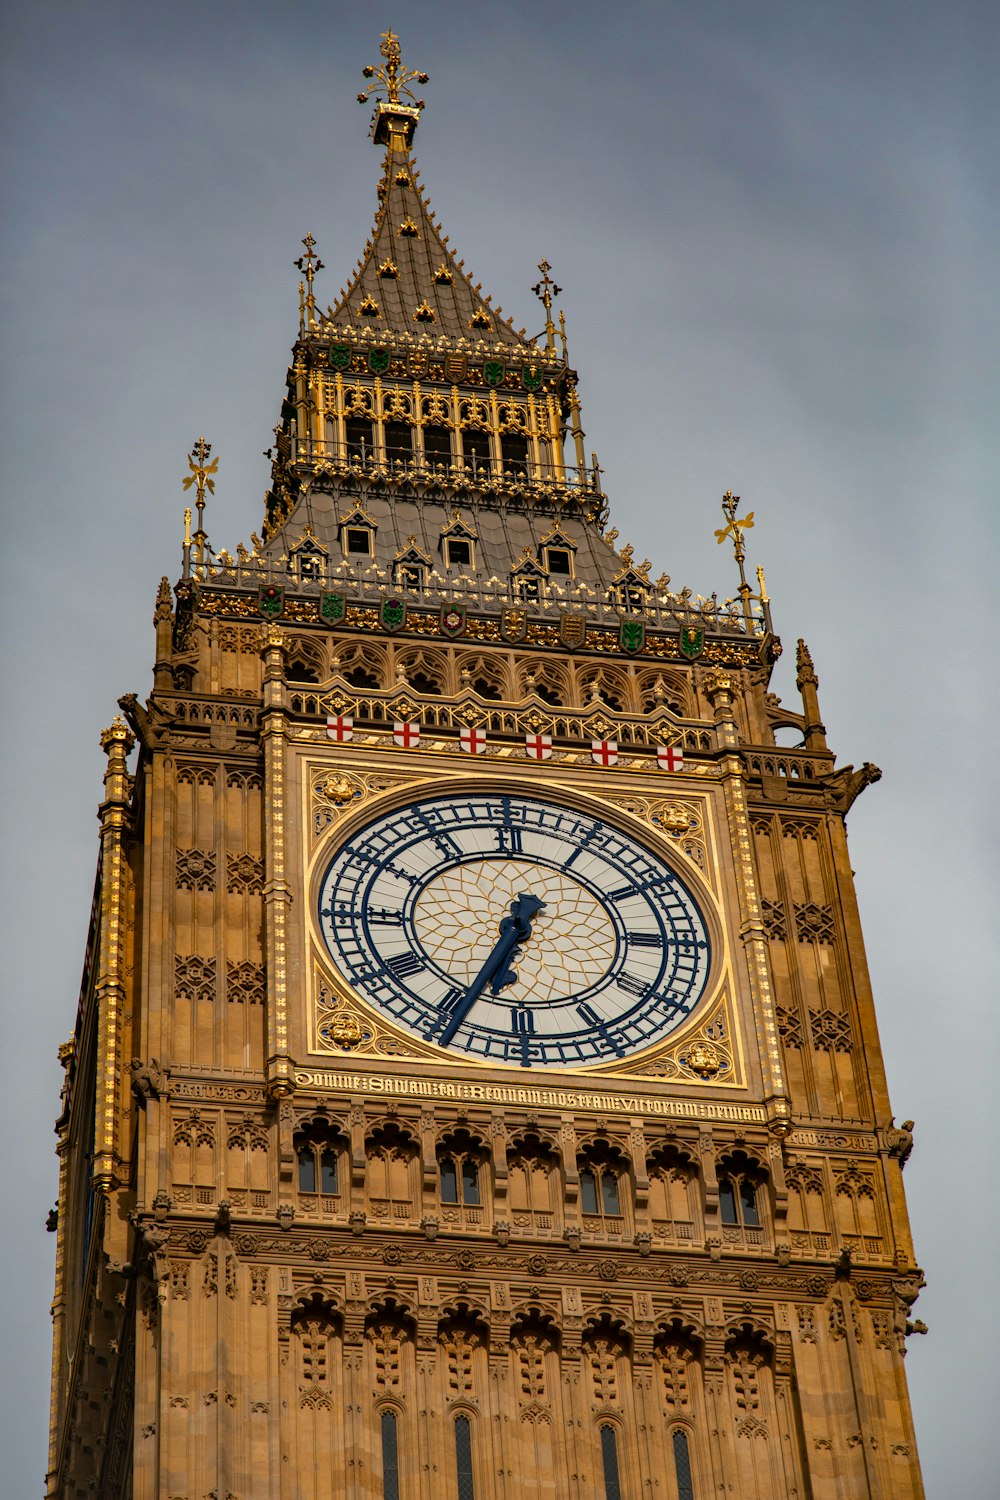 uma torre de relógio alta com um relógio em cada um de seus lados